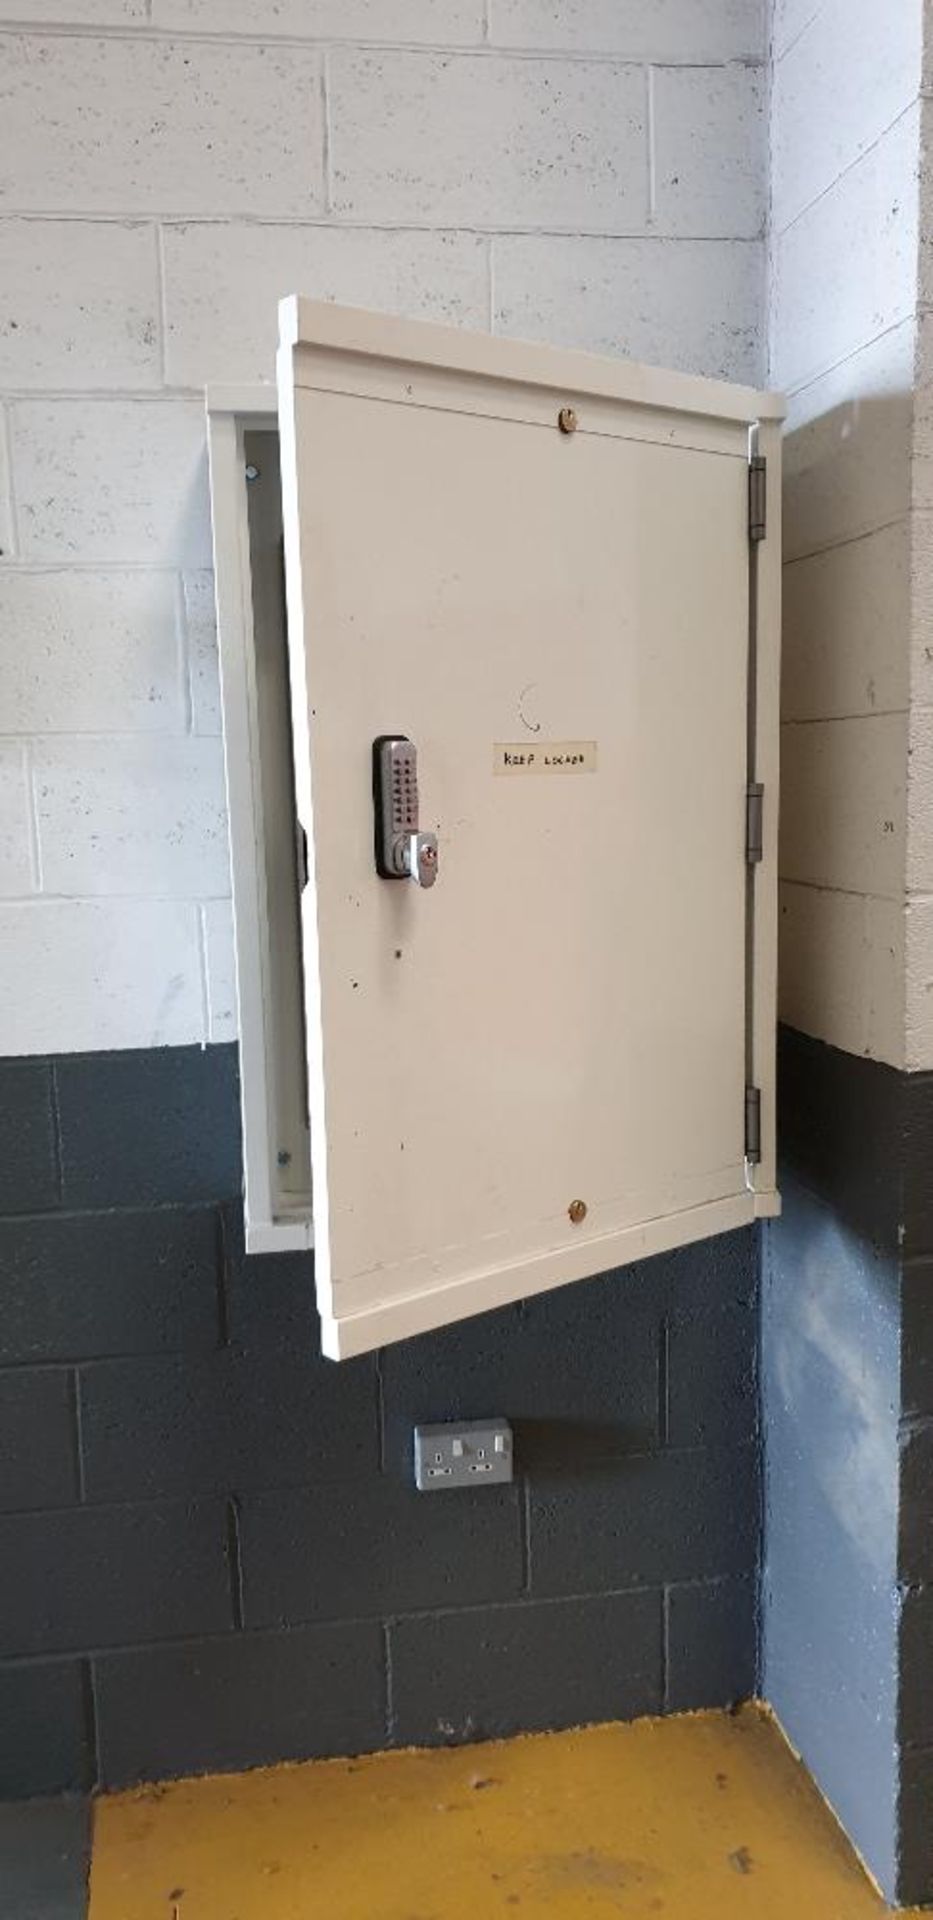 200 key capacity wall mounted key safe - Image 2 of 2